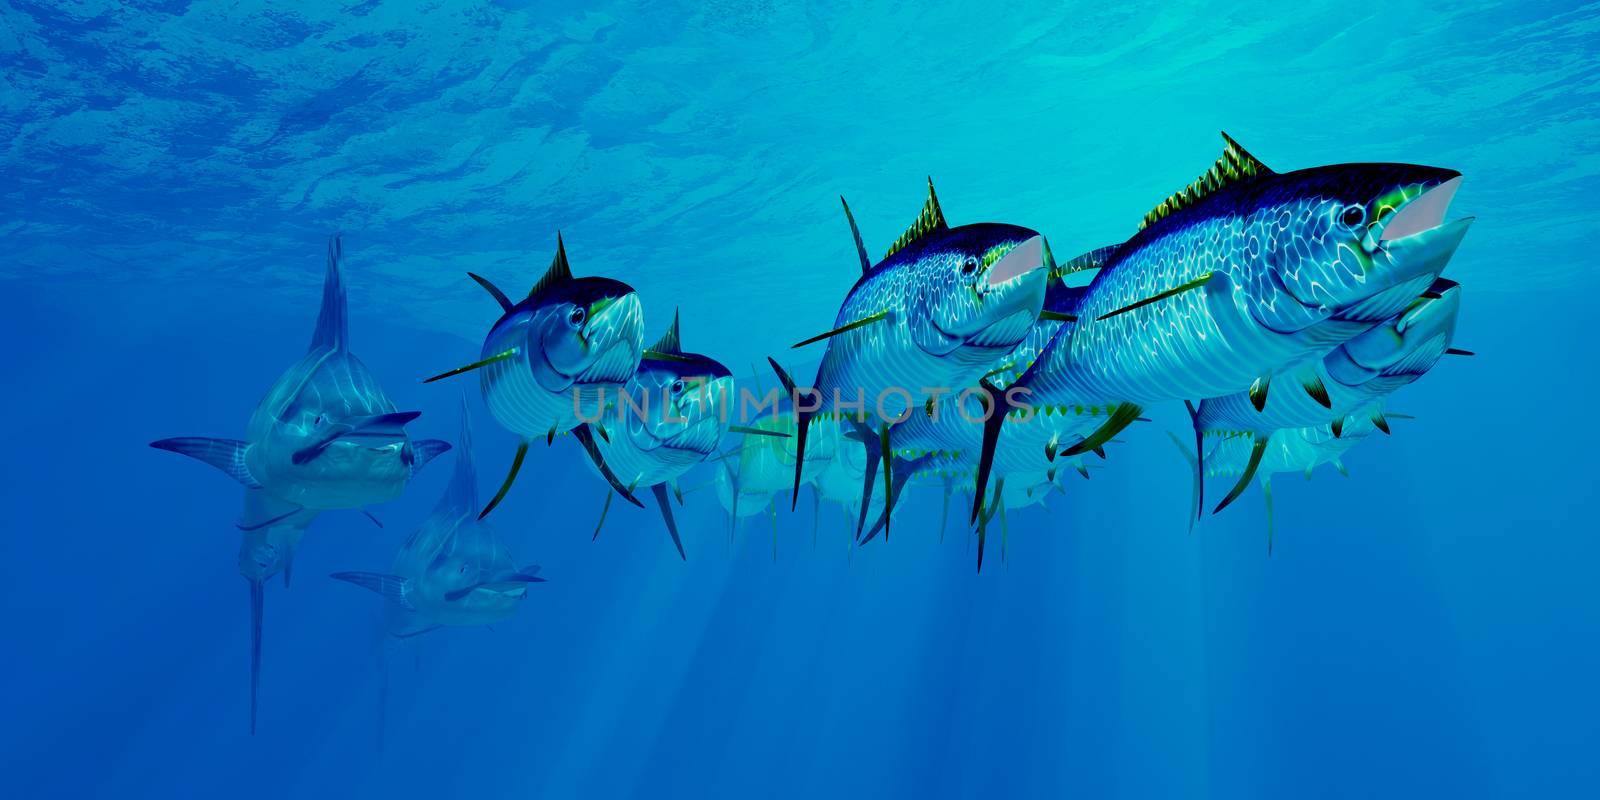 Marlin after Yellowfin Tuna School by Catmando